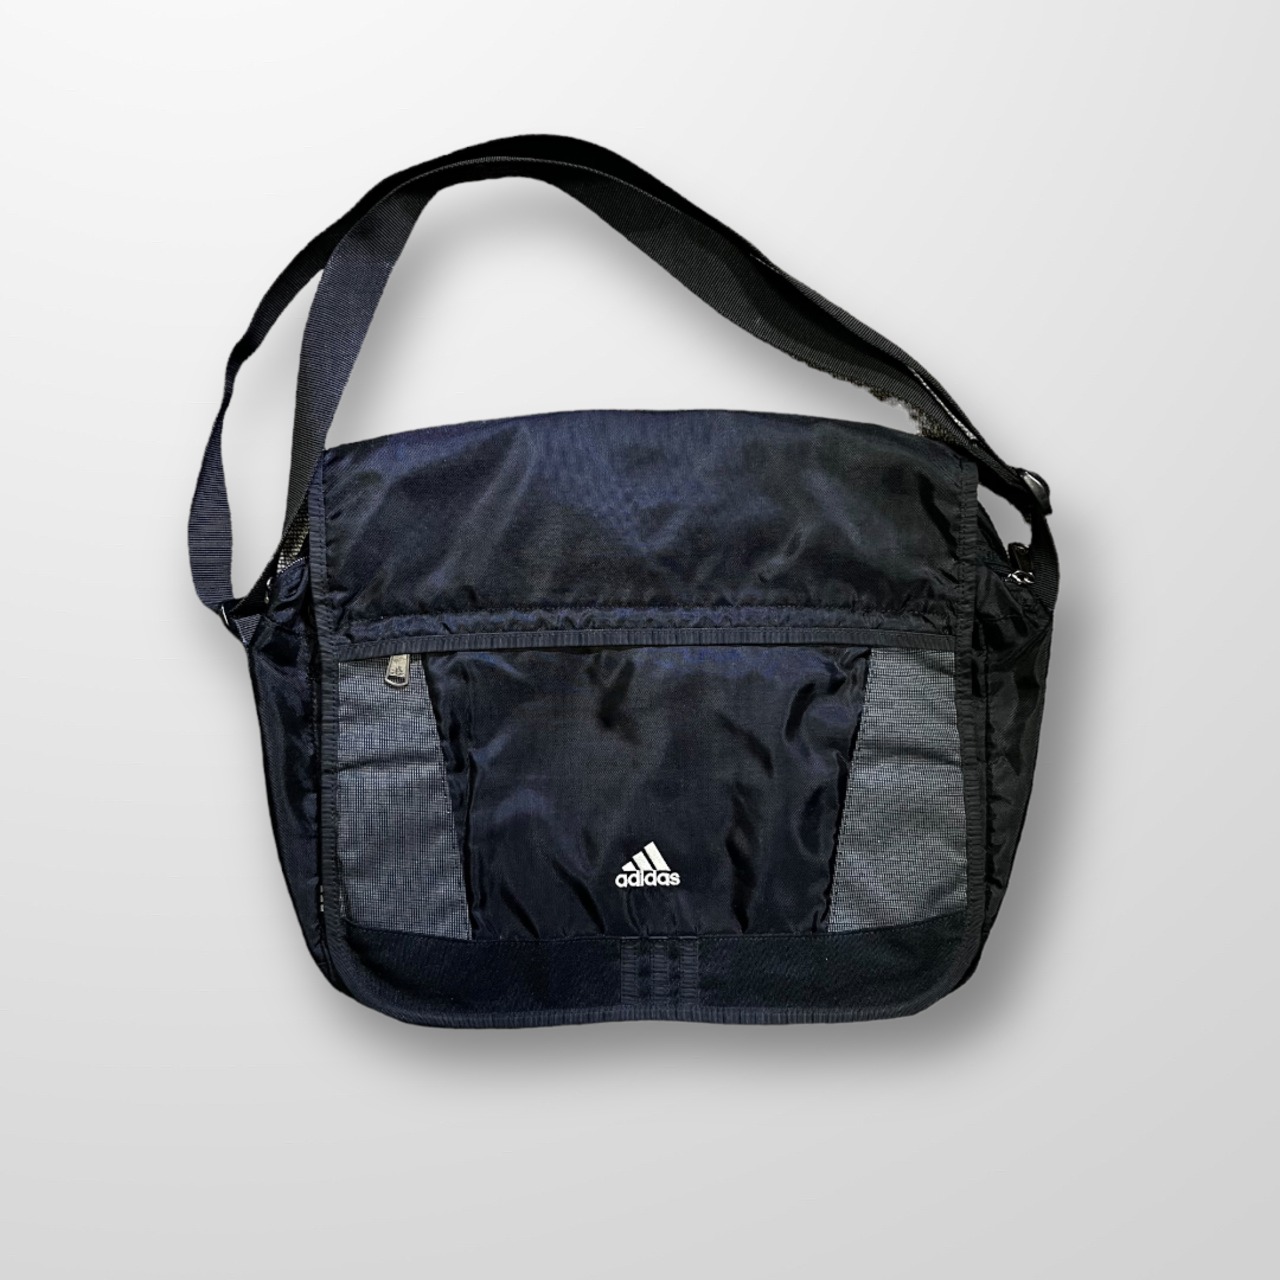 Adidas "DEORON PIECE" Messenger Bag